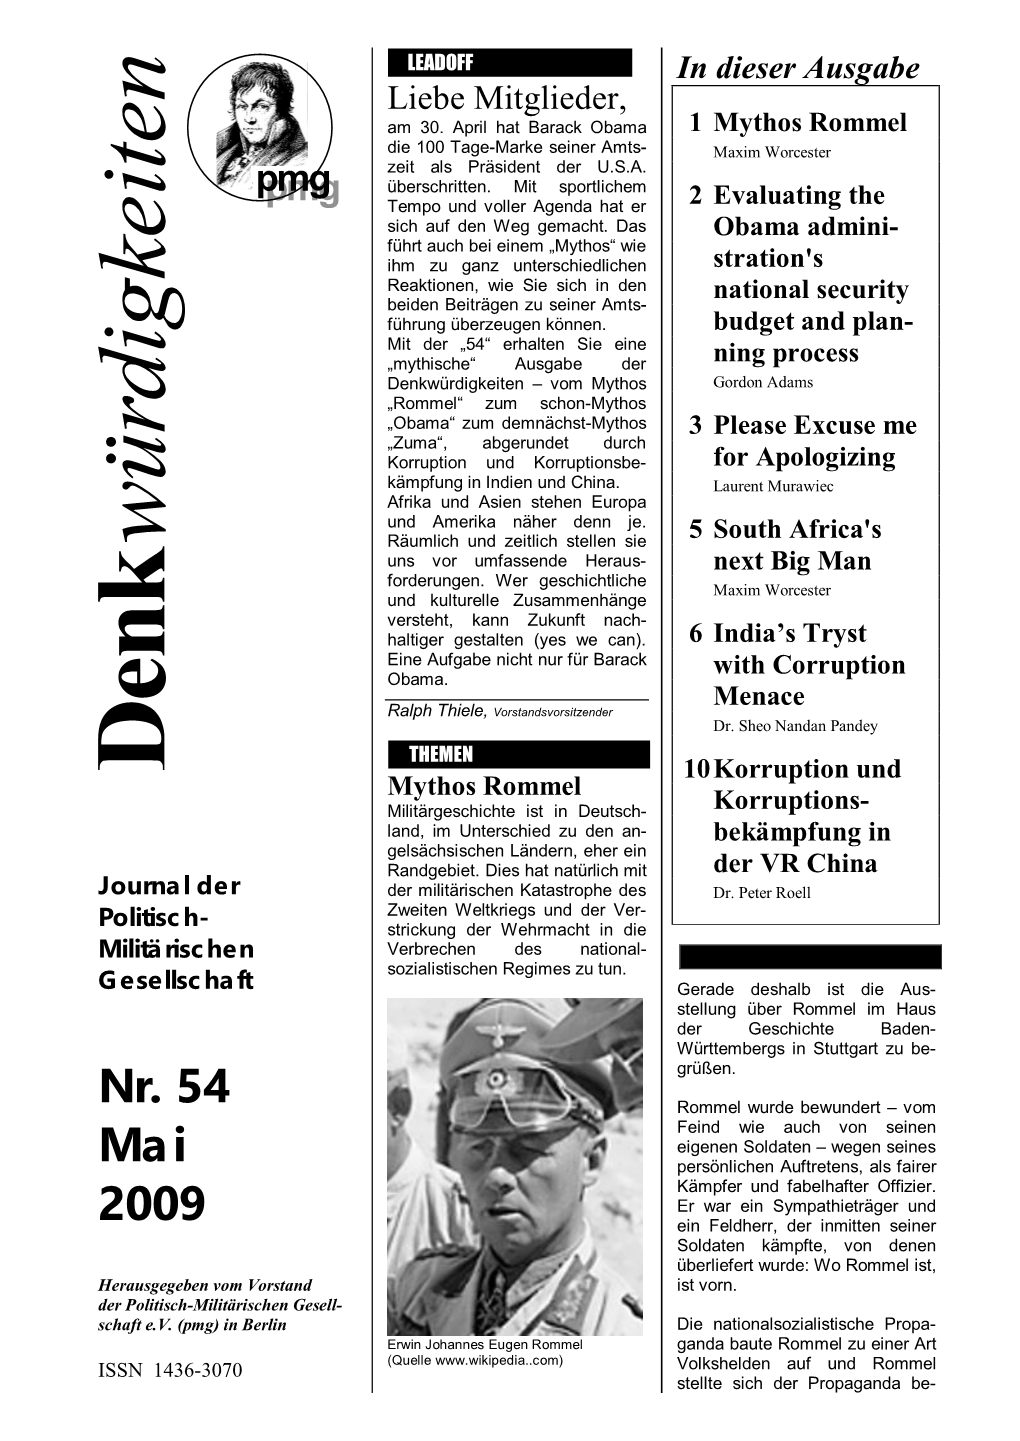 Nr. 54 Mai 2009